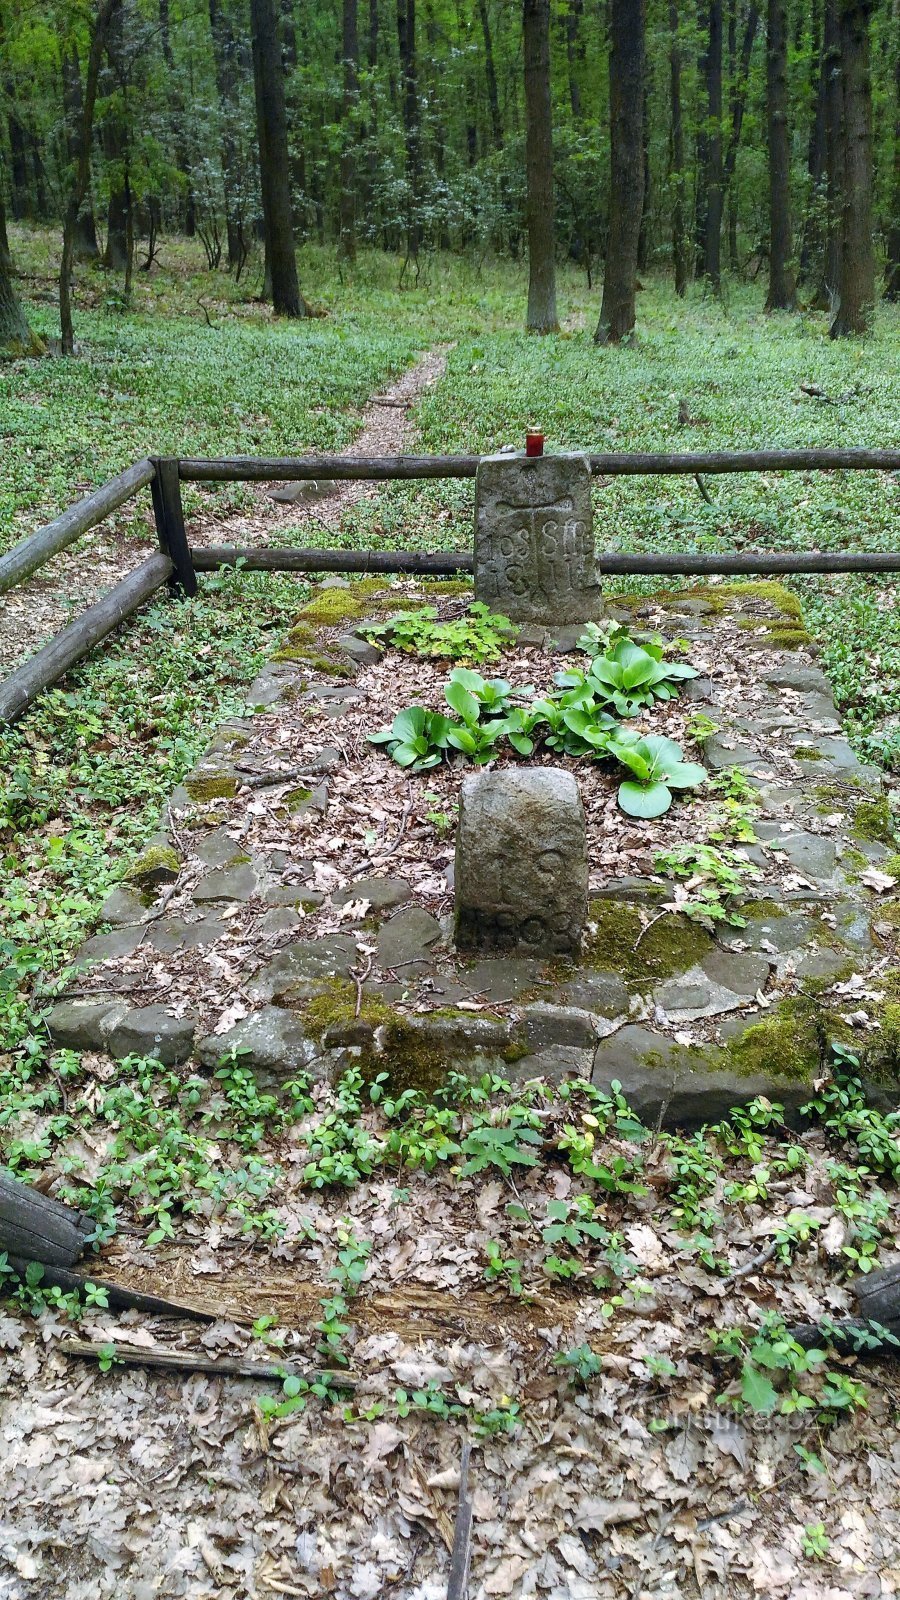 Gedenkstenen in het bos bij Kamýk.